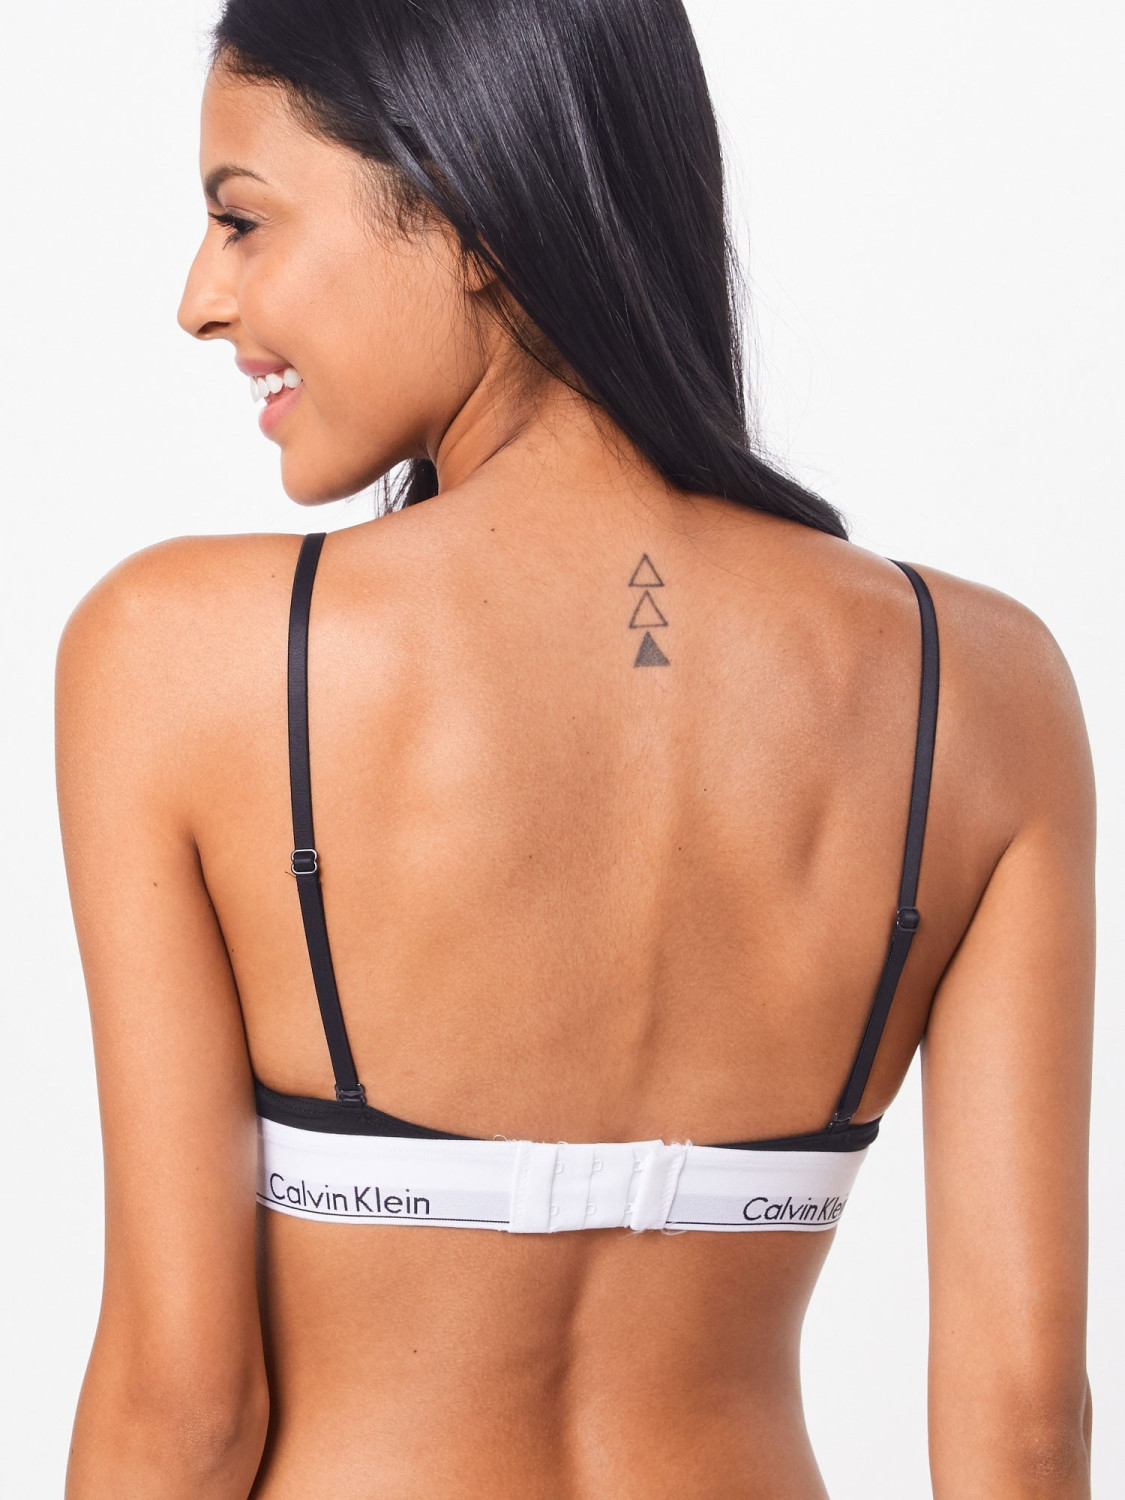 Buy Calvin Klein Modern Cotton Triangle Bra black from £22.99